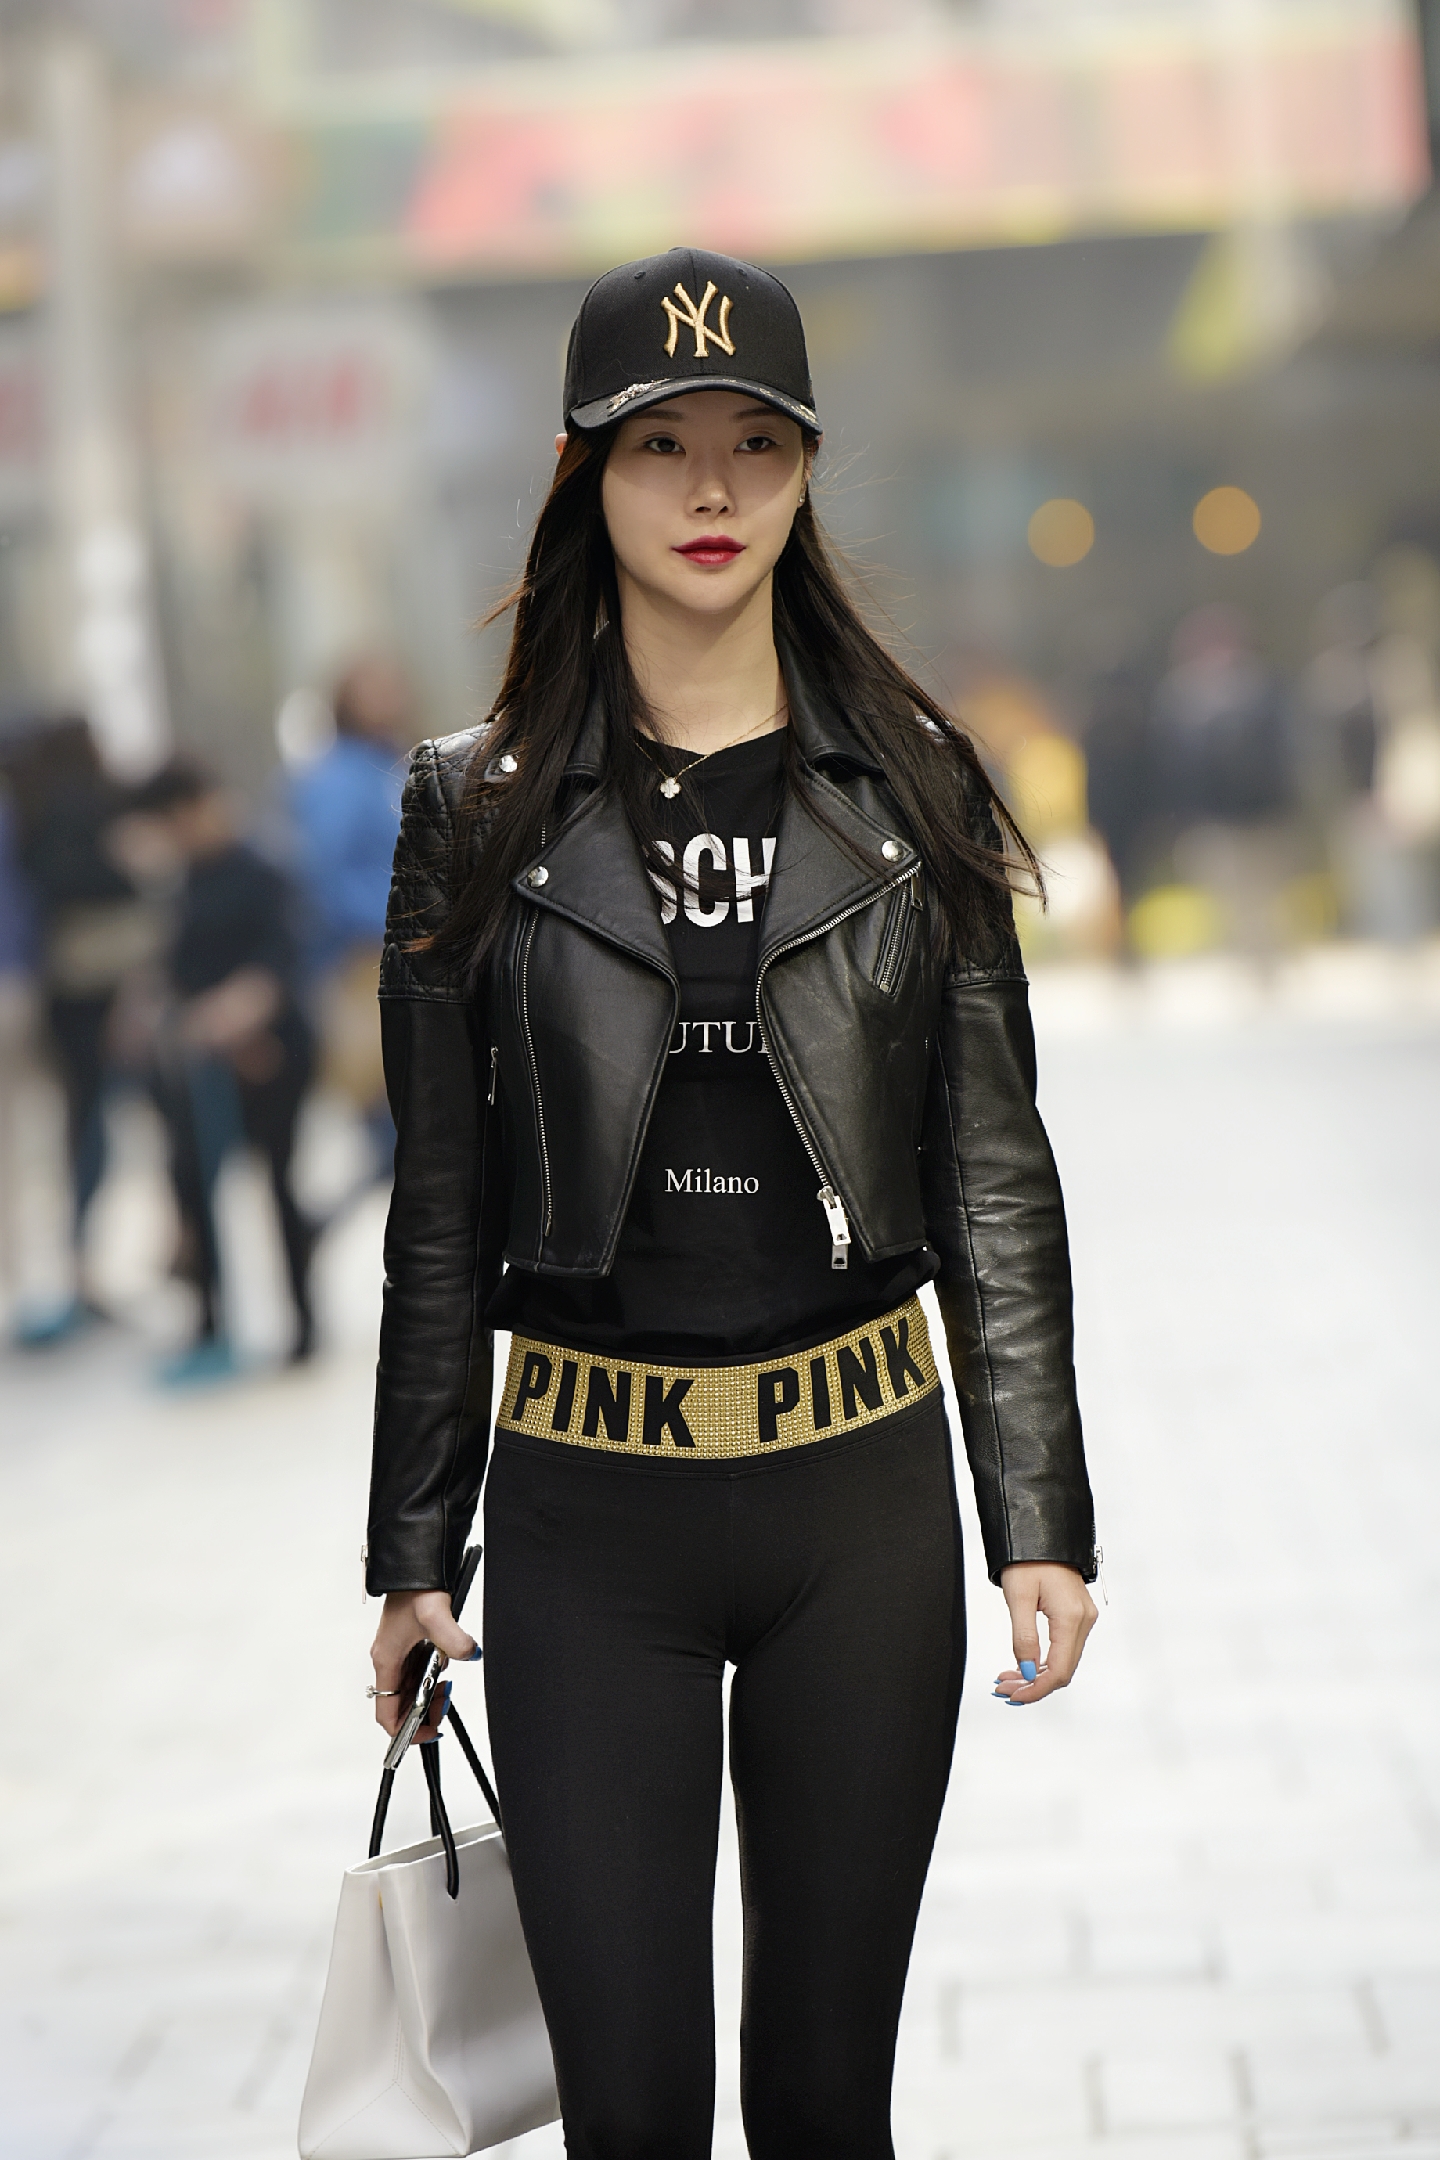 北京街拍:黑色紧身裤搭配短款皮衣的女孩,帅性又显身材曲线美